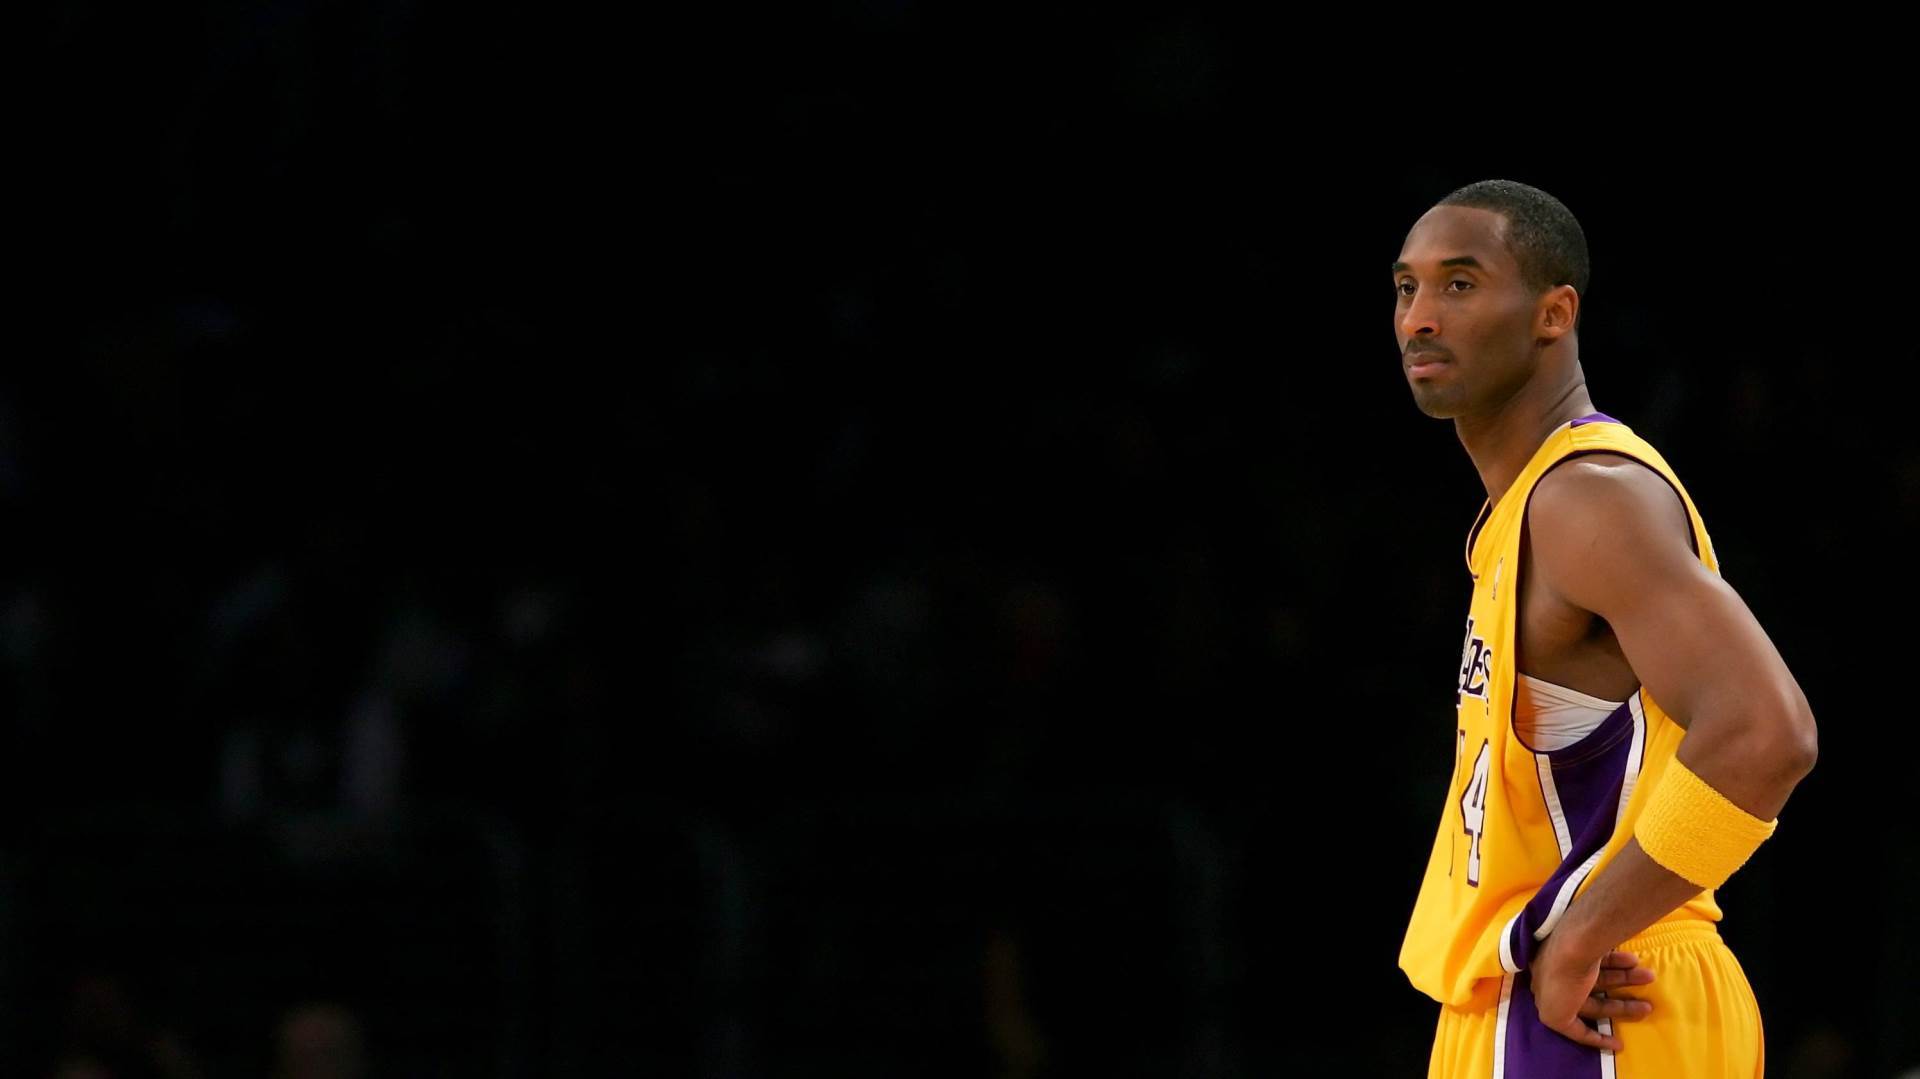  Video koji slama srce: NBA se oprostila od Kobija 